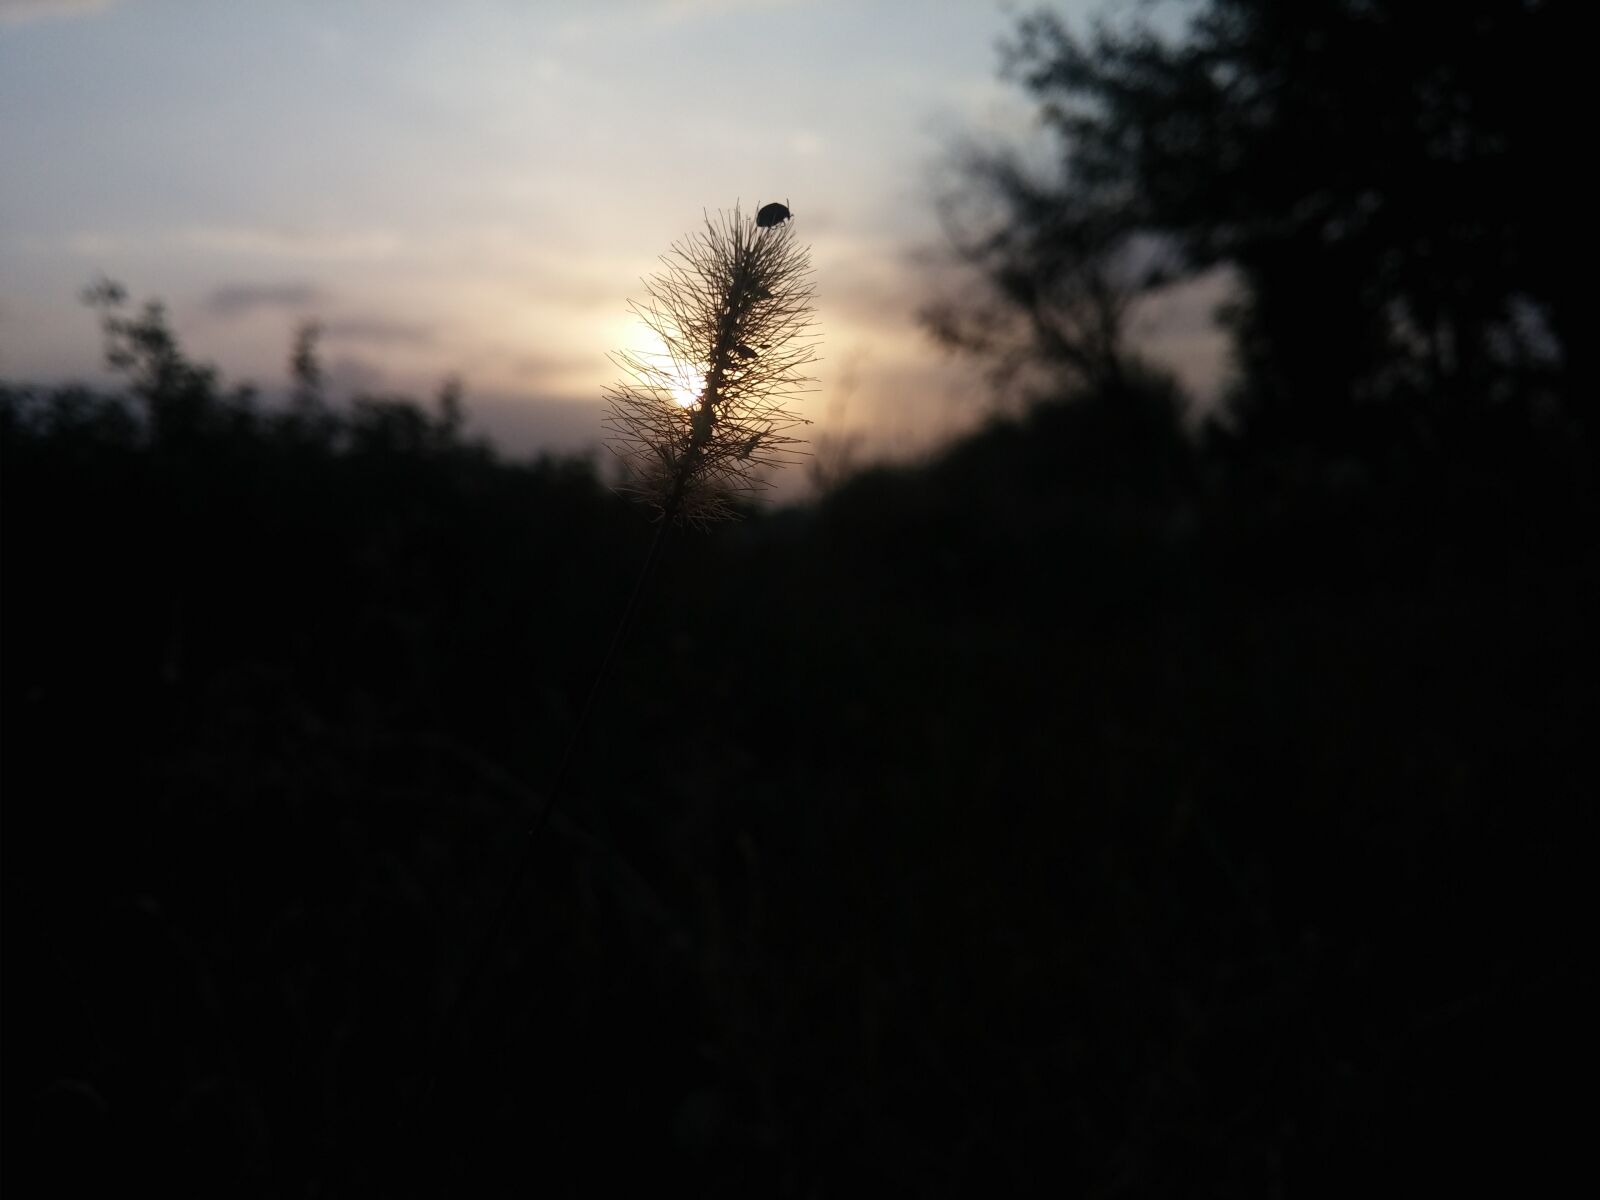 LG G2 sample photo. Animal, sunset photography